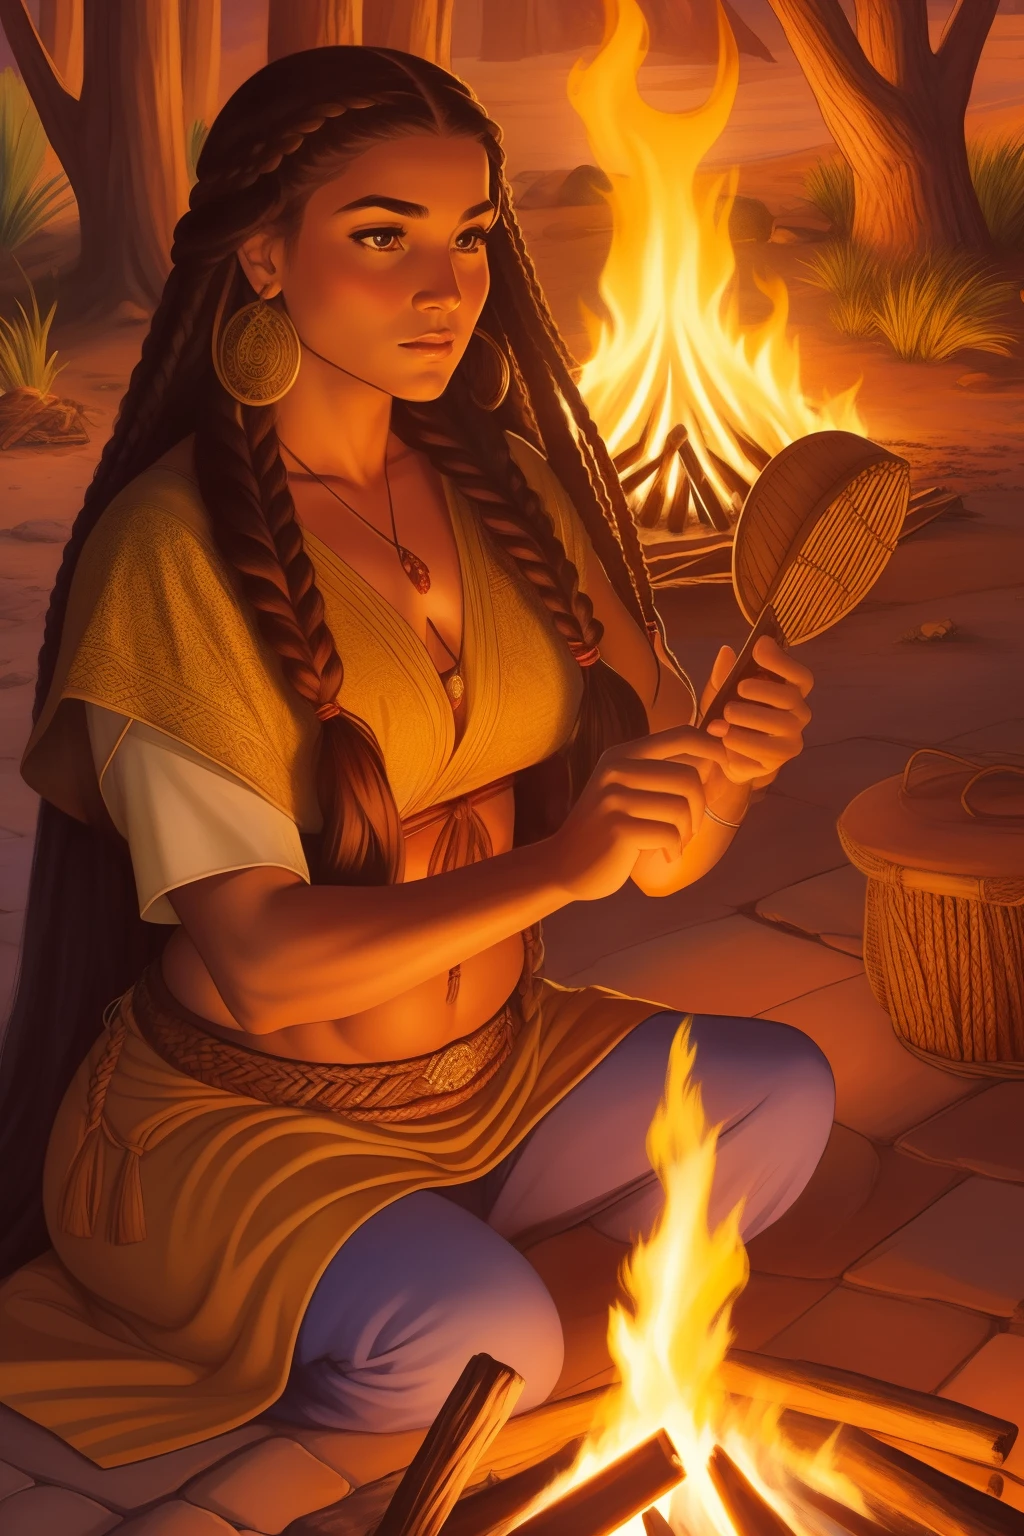 (SFW)Al mejor estilo John Buscema, una hermosa mujer apache con el pelo largo trenzado, mirada furtiva, belleza indomable, vistiendo ropa tradicional de su tribu, junto a una fogata, calentando, escena perfecta, arte detallado (SFW)